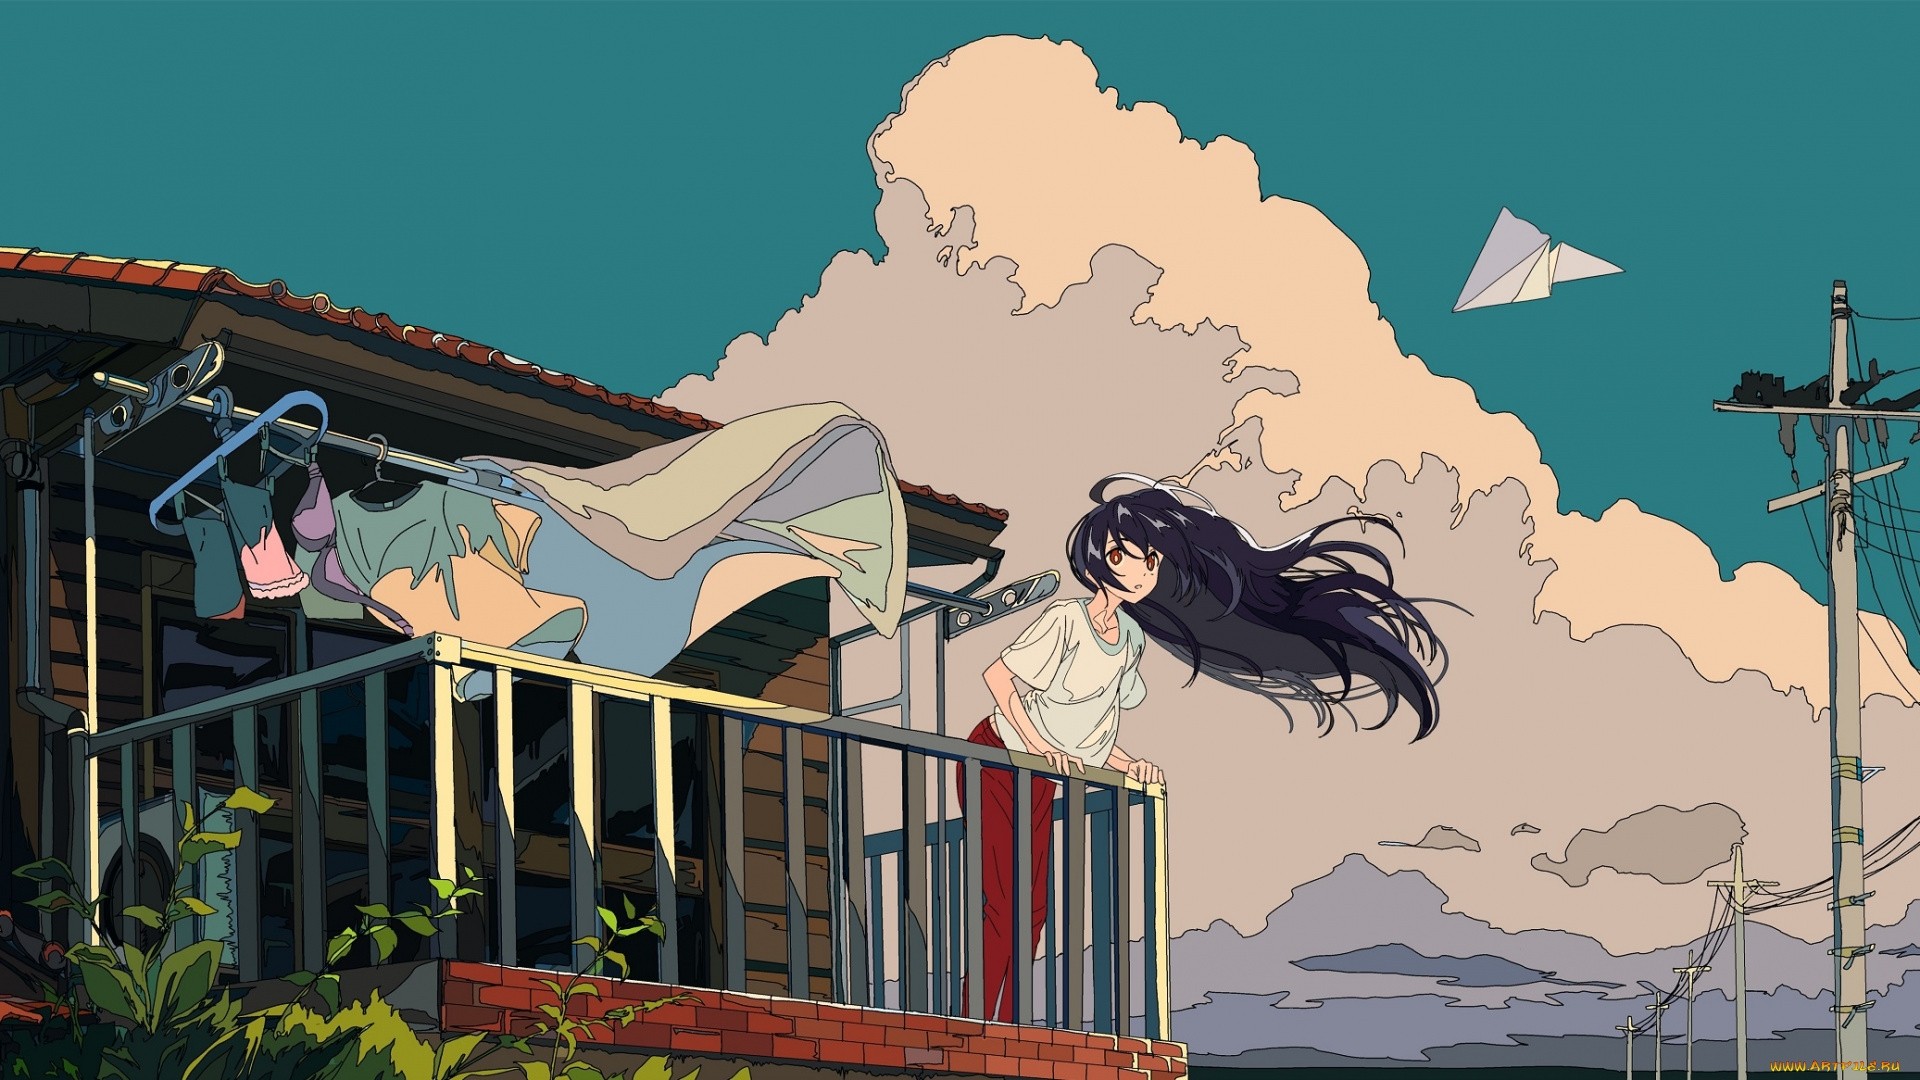 Aesthetic anime wallpaper pc